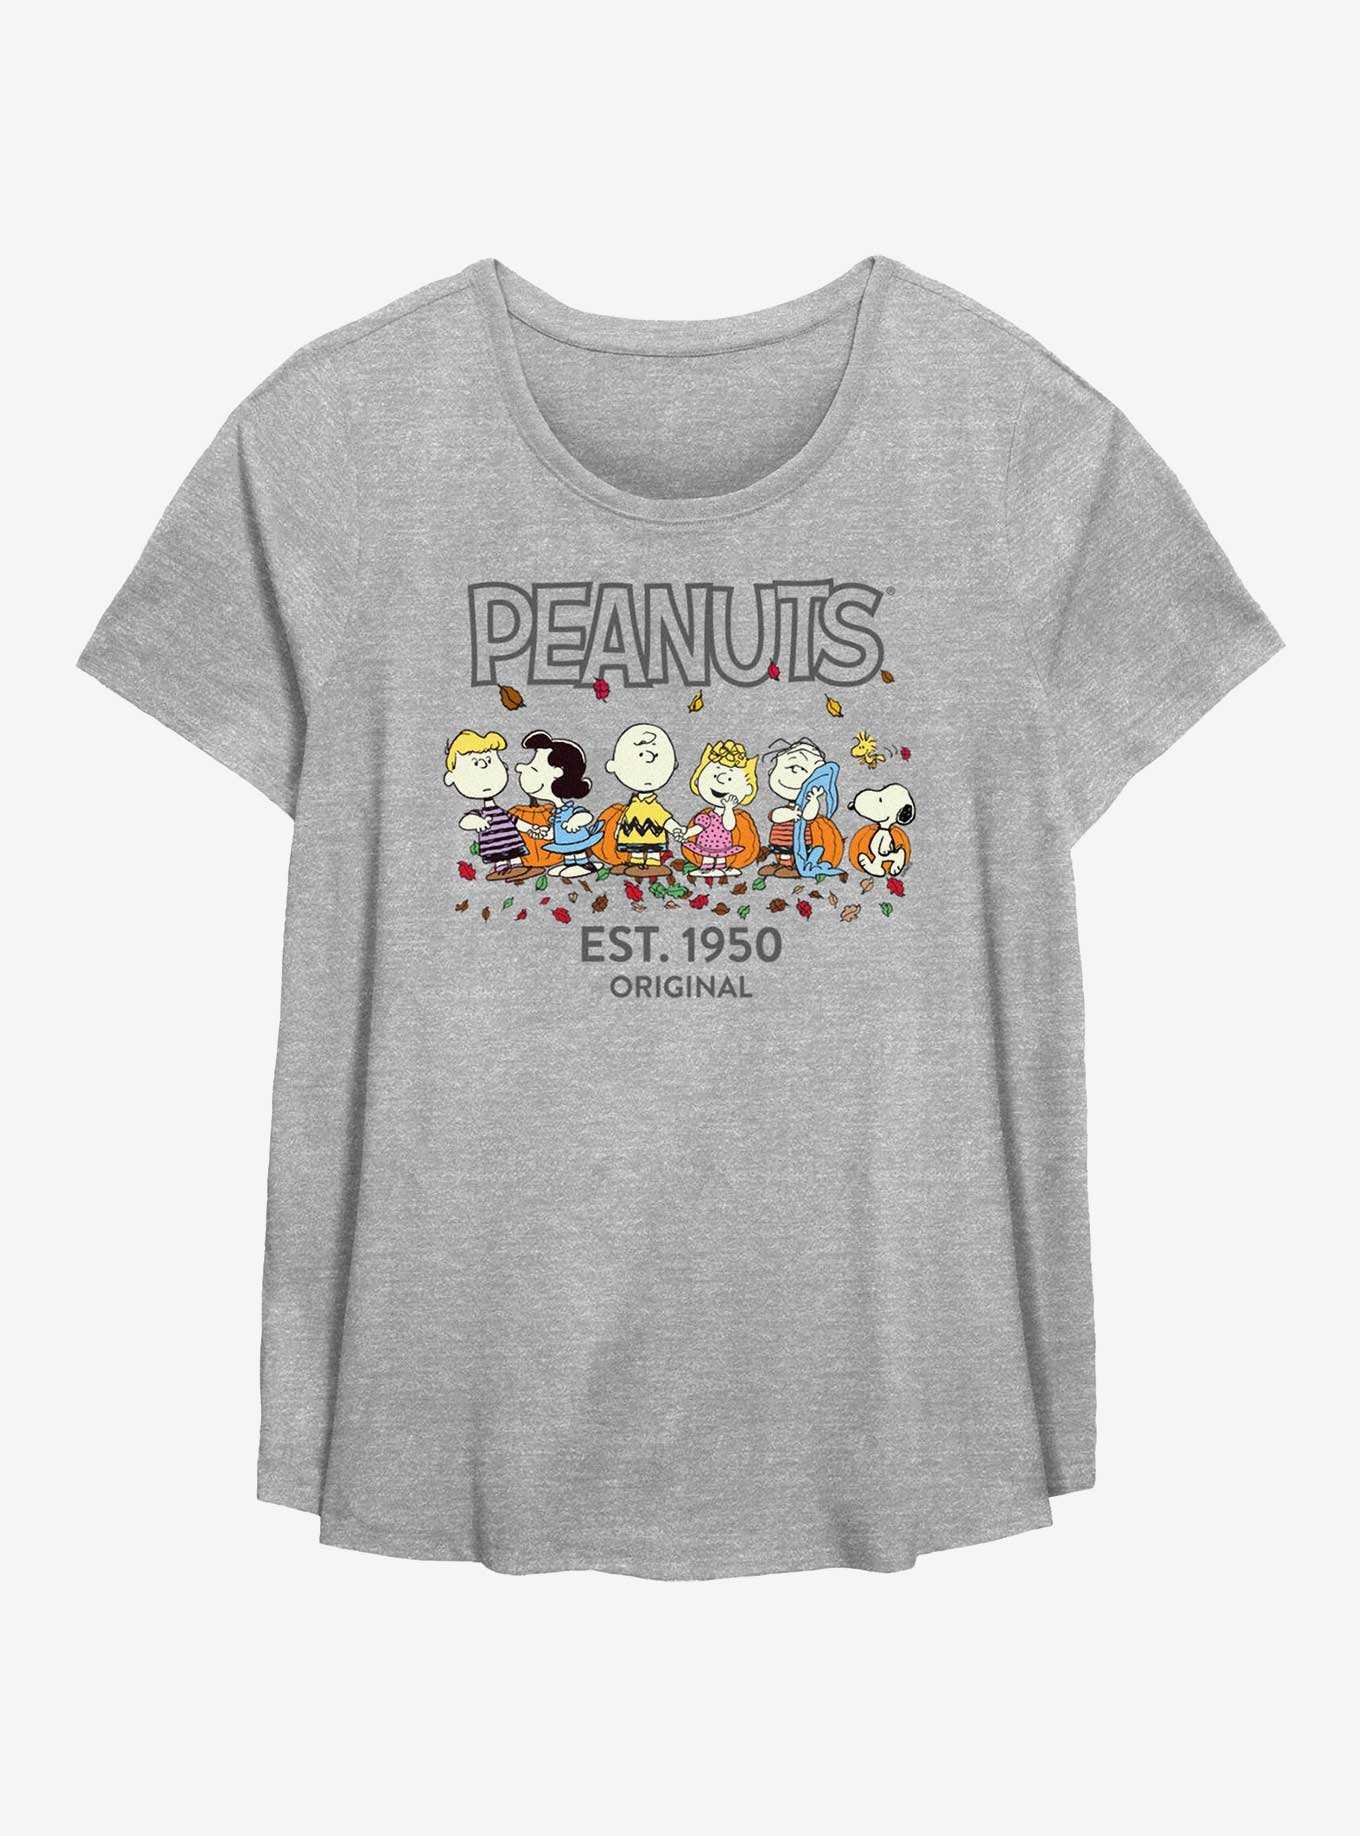 Womens Peanuts Sweatshirt Shirt XXL 2X PLUS Size Snoopy Fall